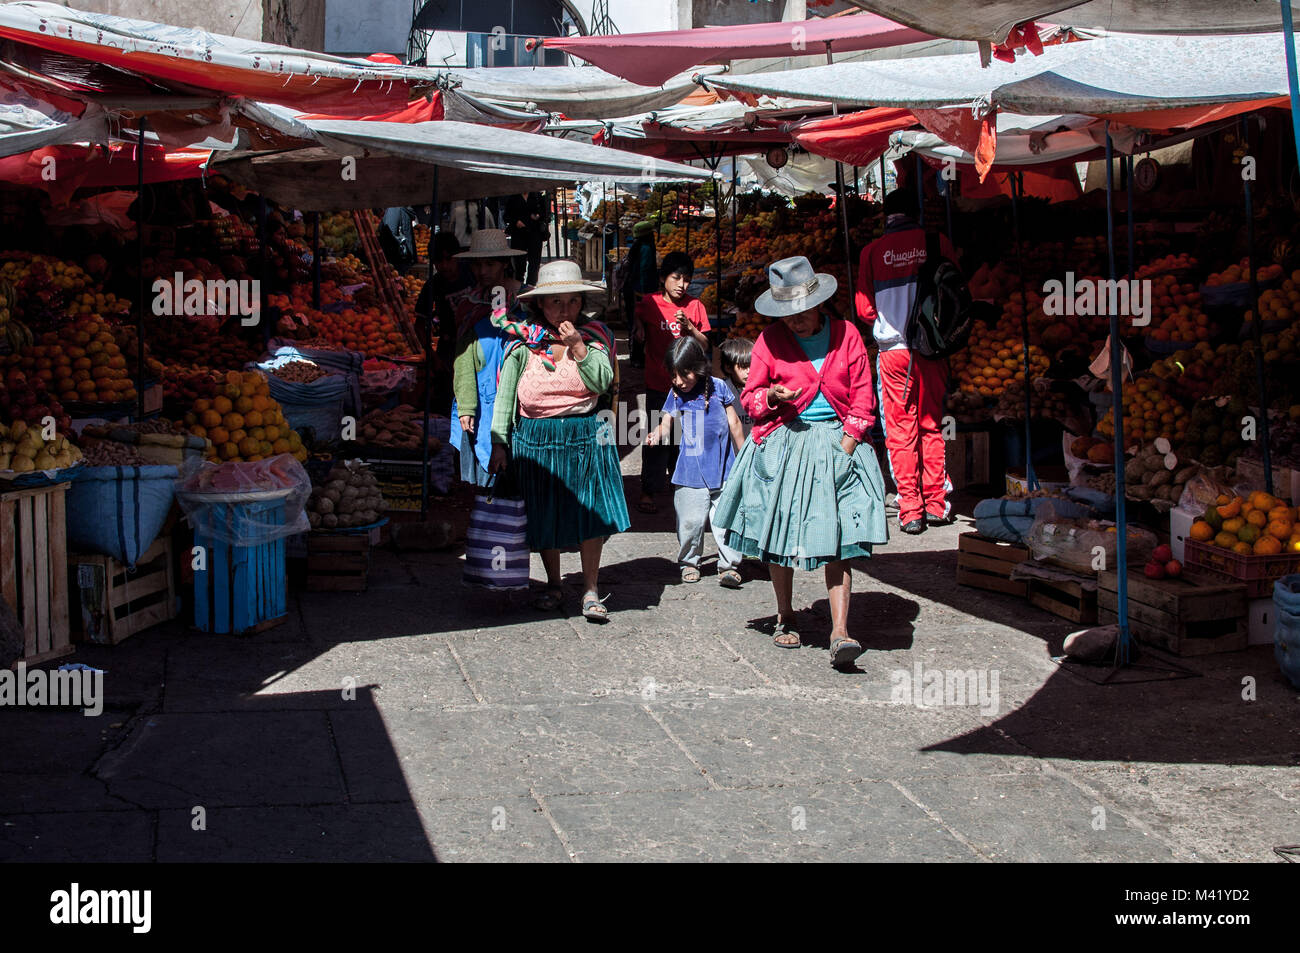 Les femmes portant des chapeaux et des vêtements traditionnels en se promenant dans un marché avec leurs enfants en Sucre, Bolivie Banque D'Images